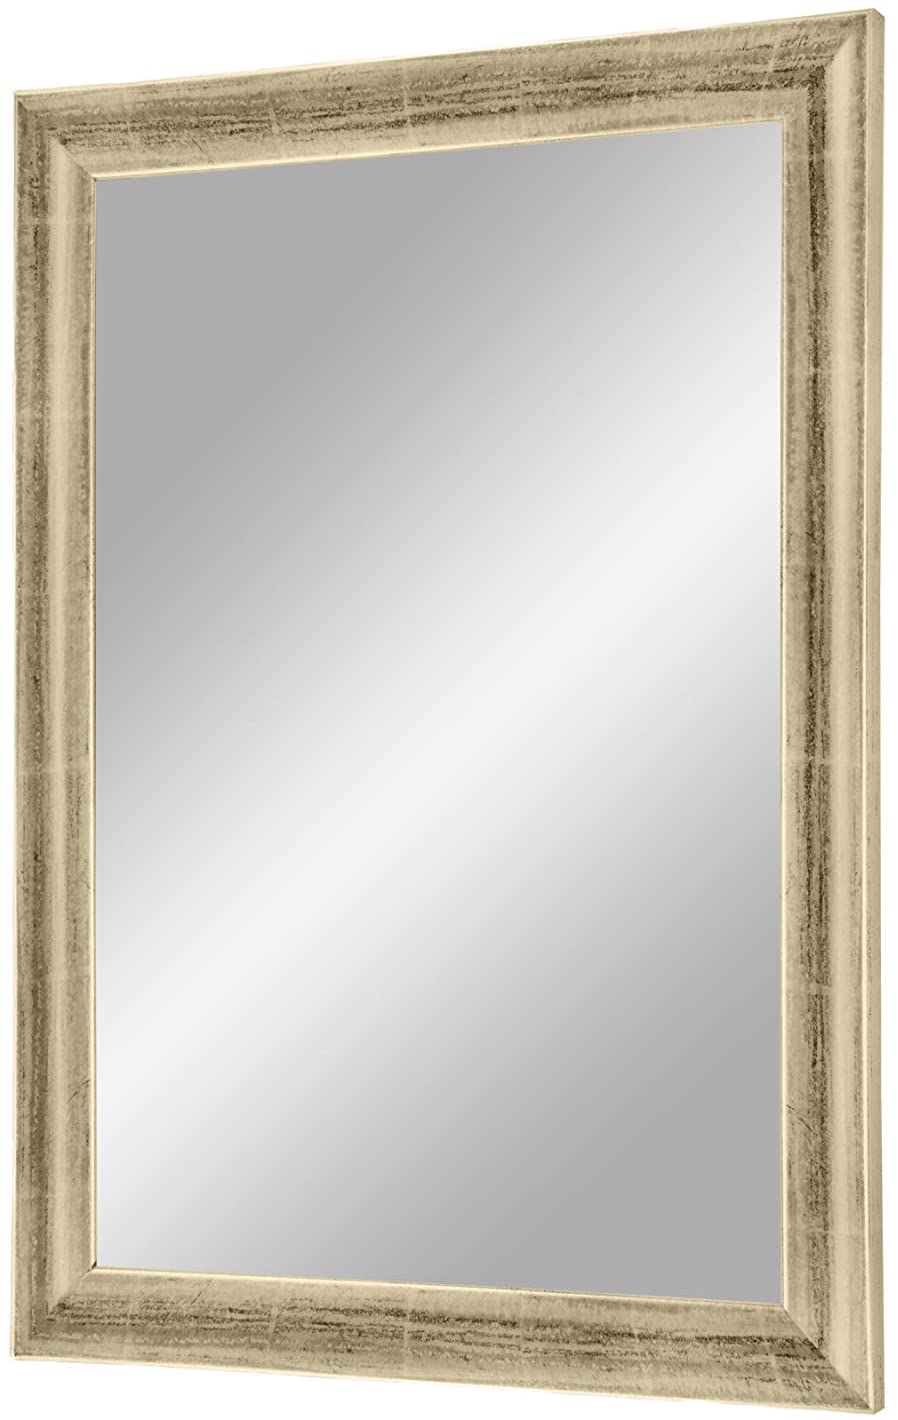 EXCLUSIV Wandspiegel nach Maß (Silber-Leaf), Maßgefertigter Spiegelrahmen inkl. Spiegel und stabiler Rückwand mit Aufhängern